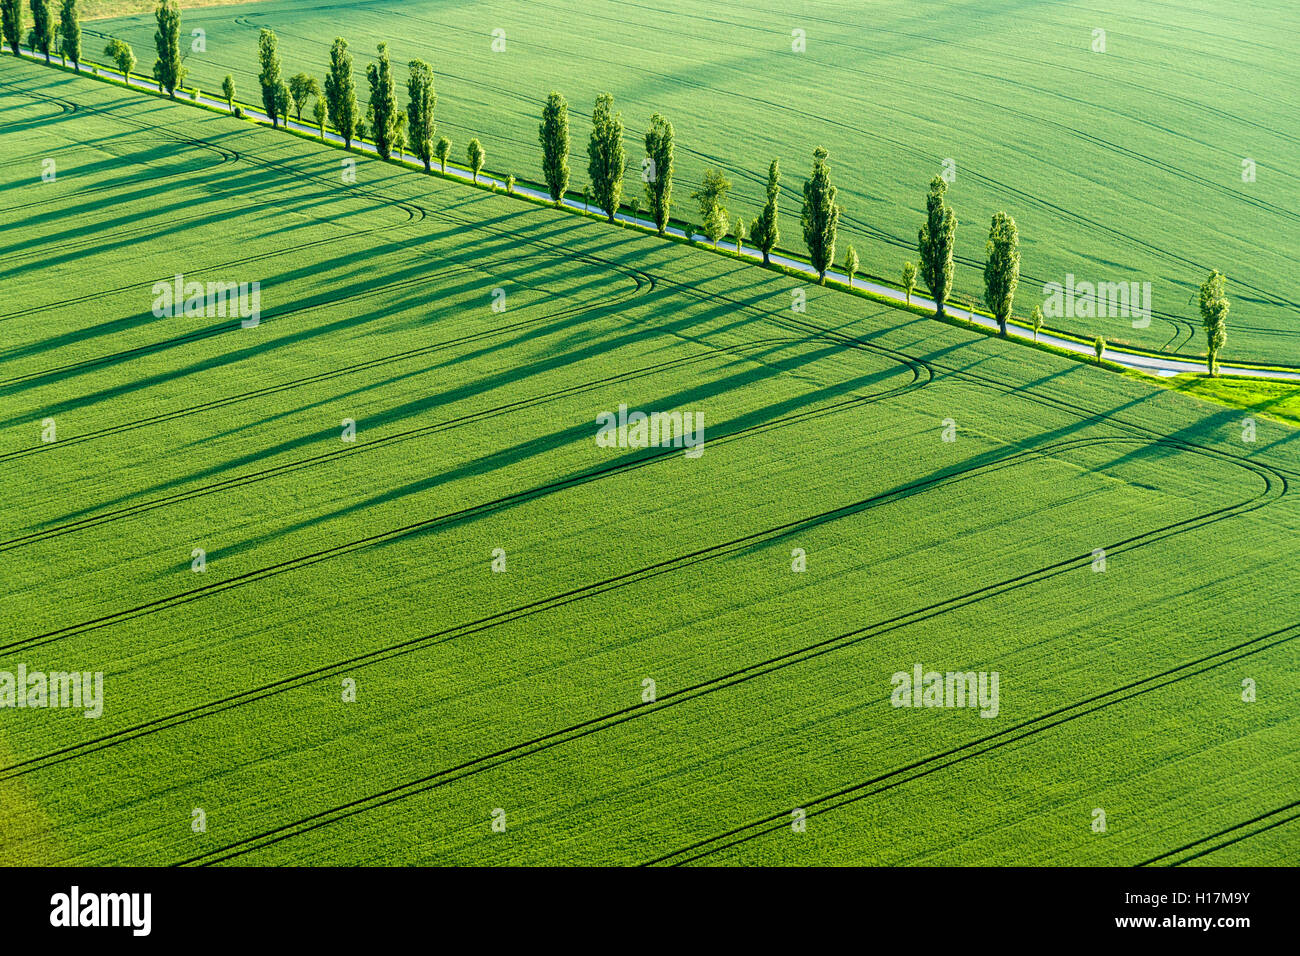 Una fila de álamos (Populus) está creando una larga sombra sobre un campo verde, Königstein, Sajonia, Alemania Foto de stock